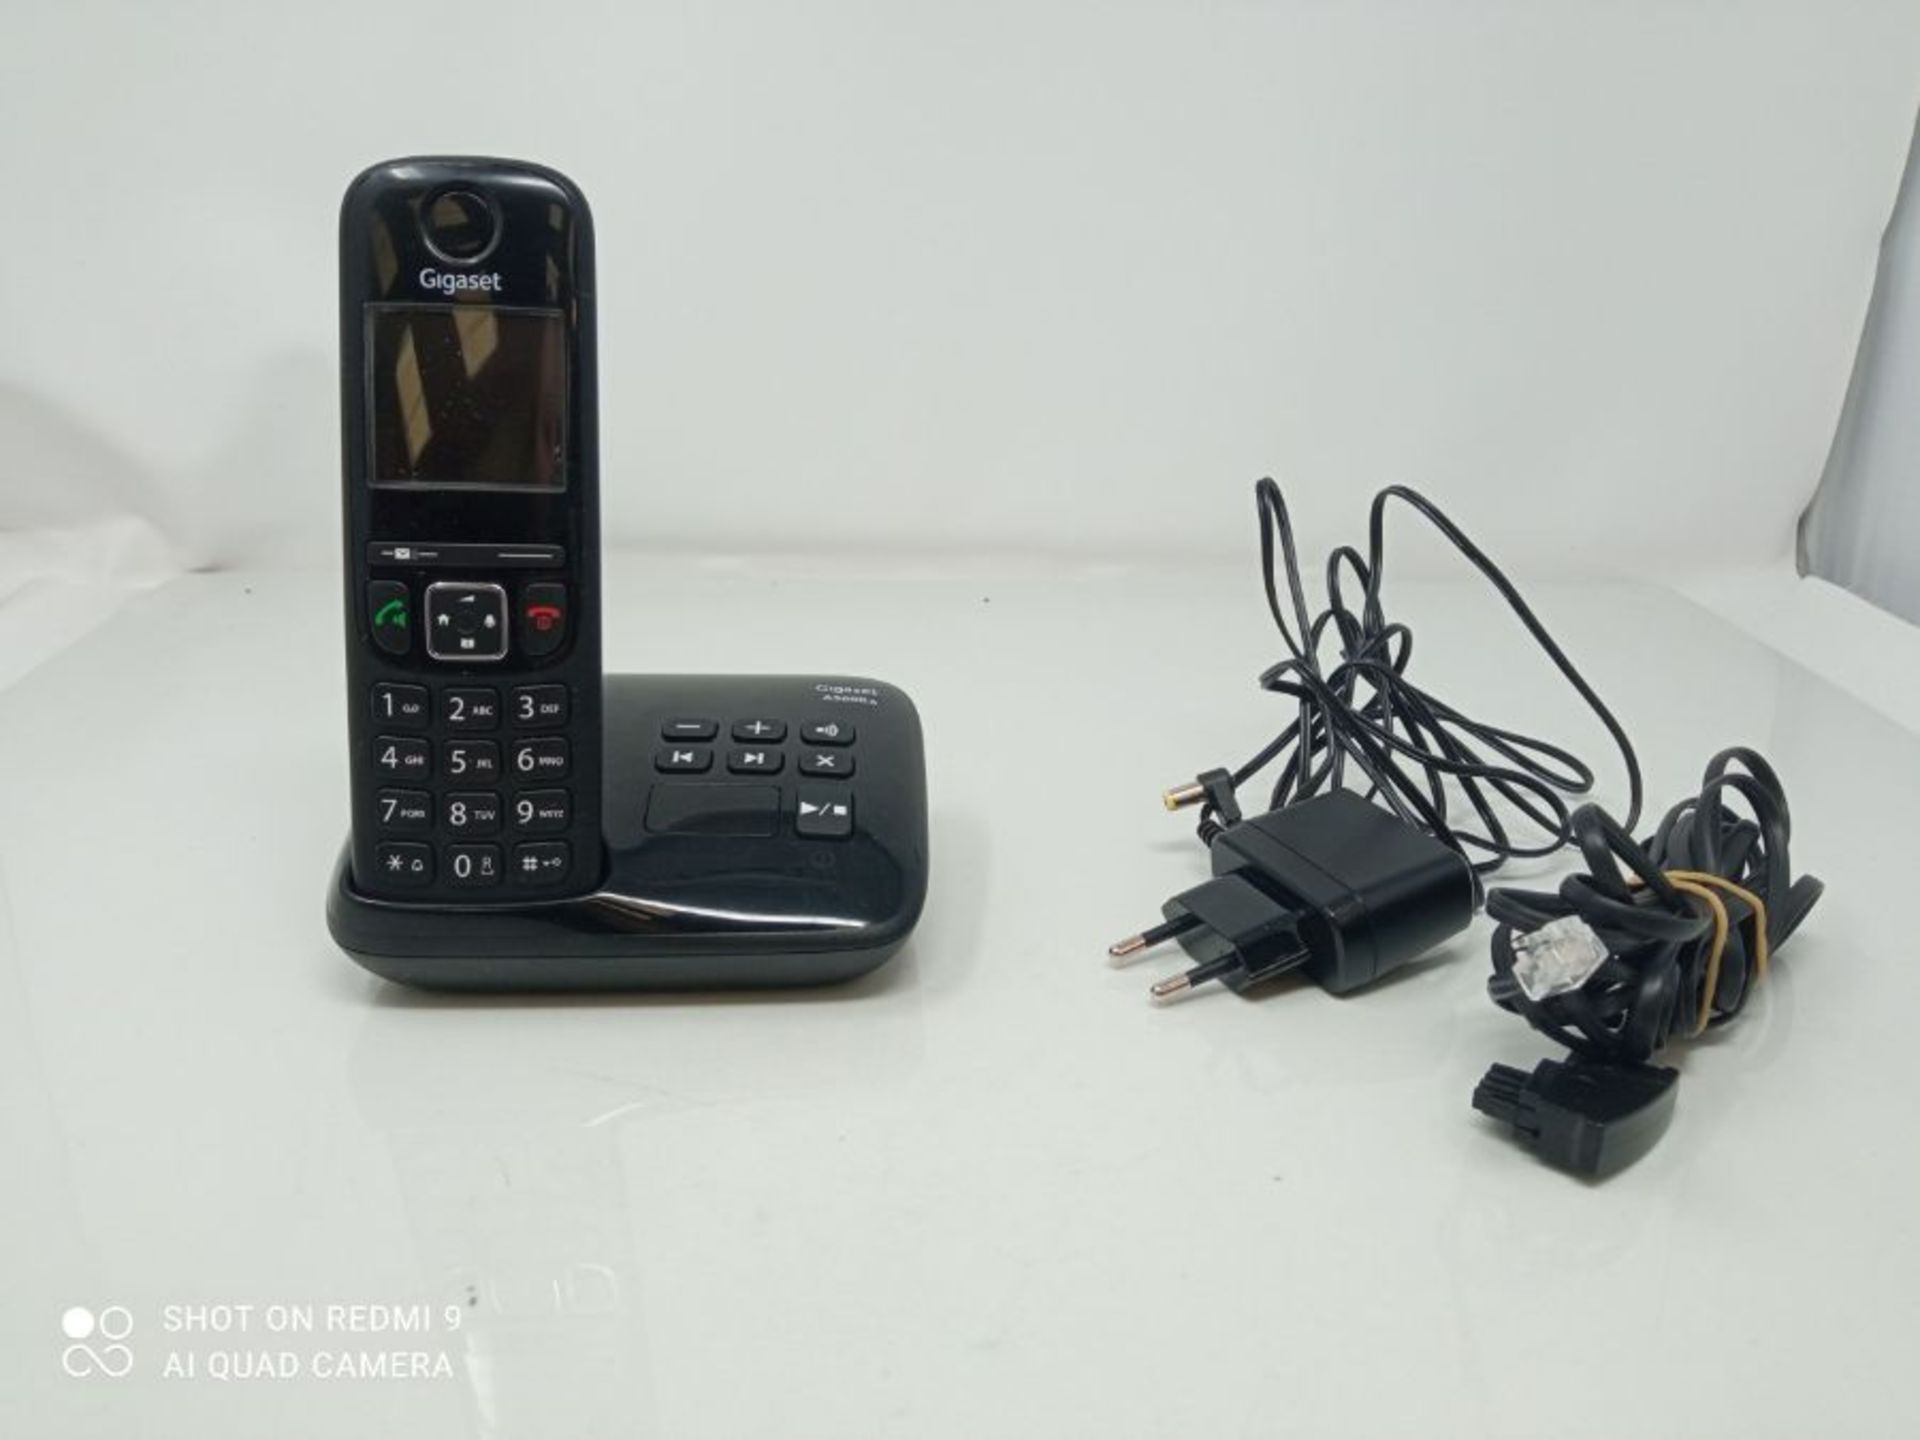 Gigaset AS690A - Schnurloses Telefon mit Anrufbeantworter - groÃxes, kontrastreiches - Image 3 of 3